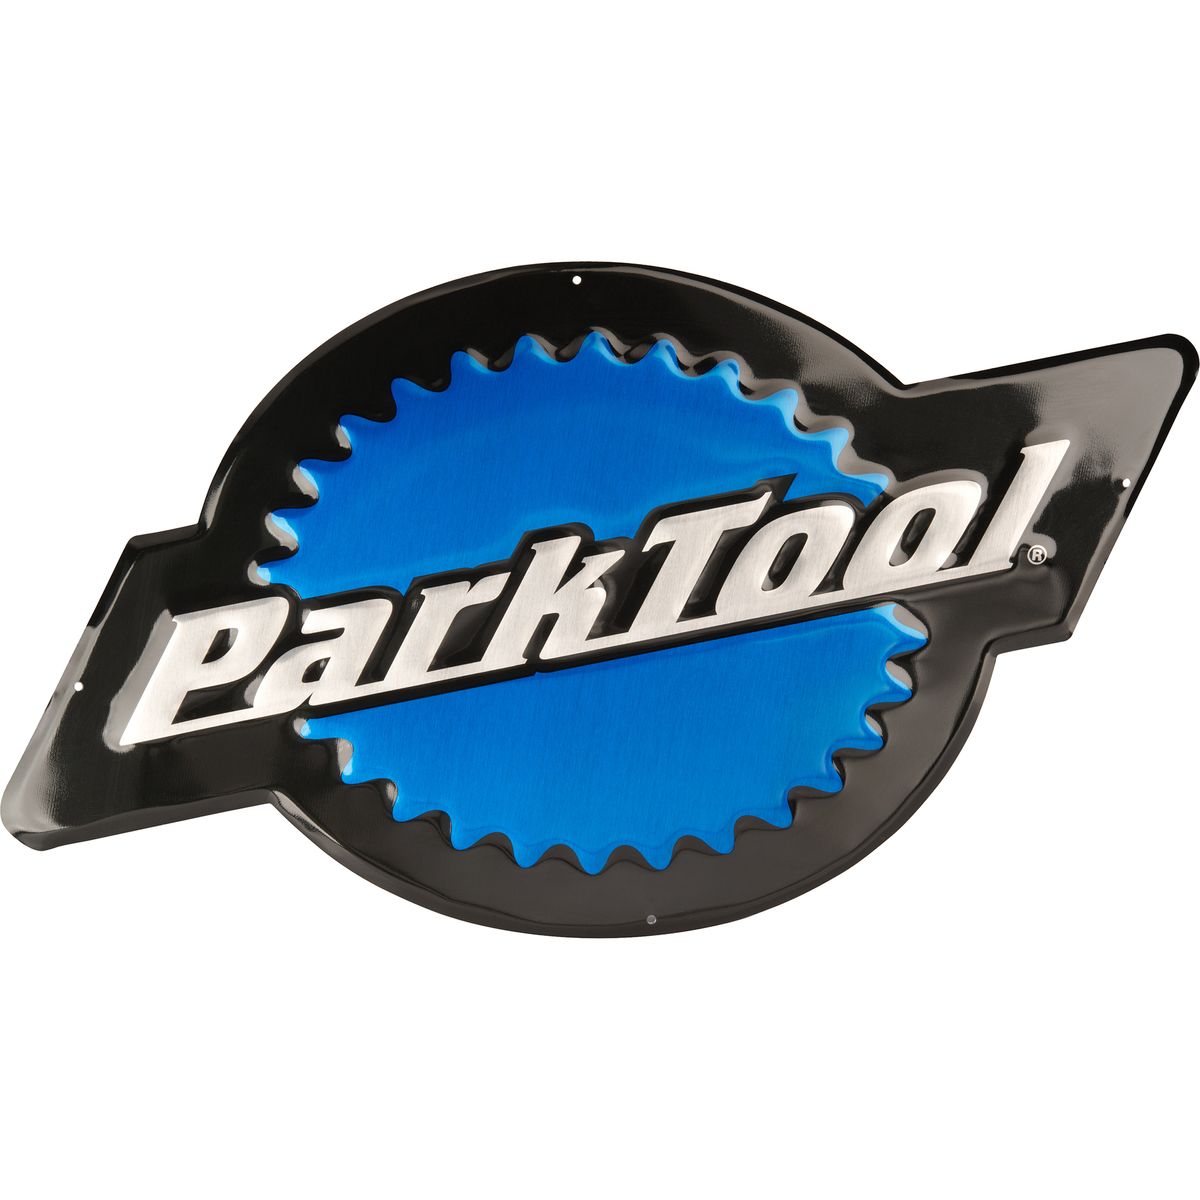 Park Tool Metal Park Tool Logo Sign